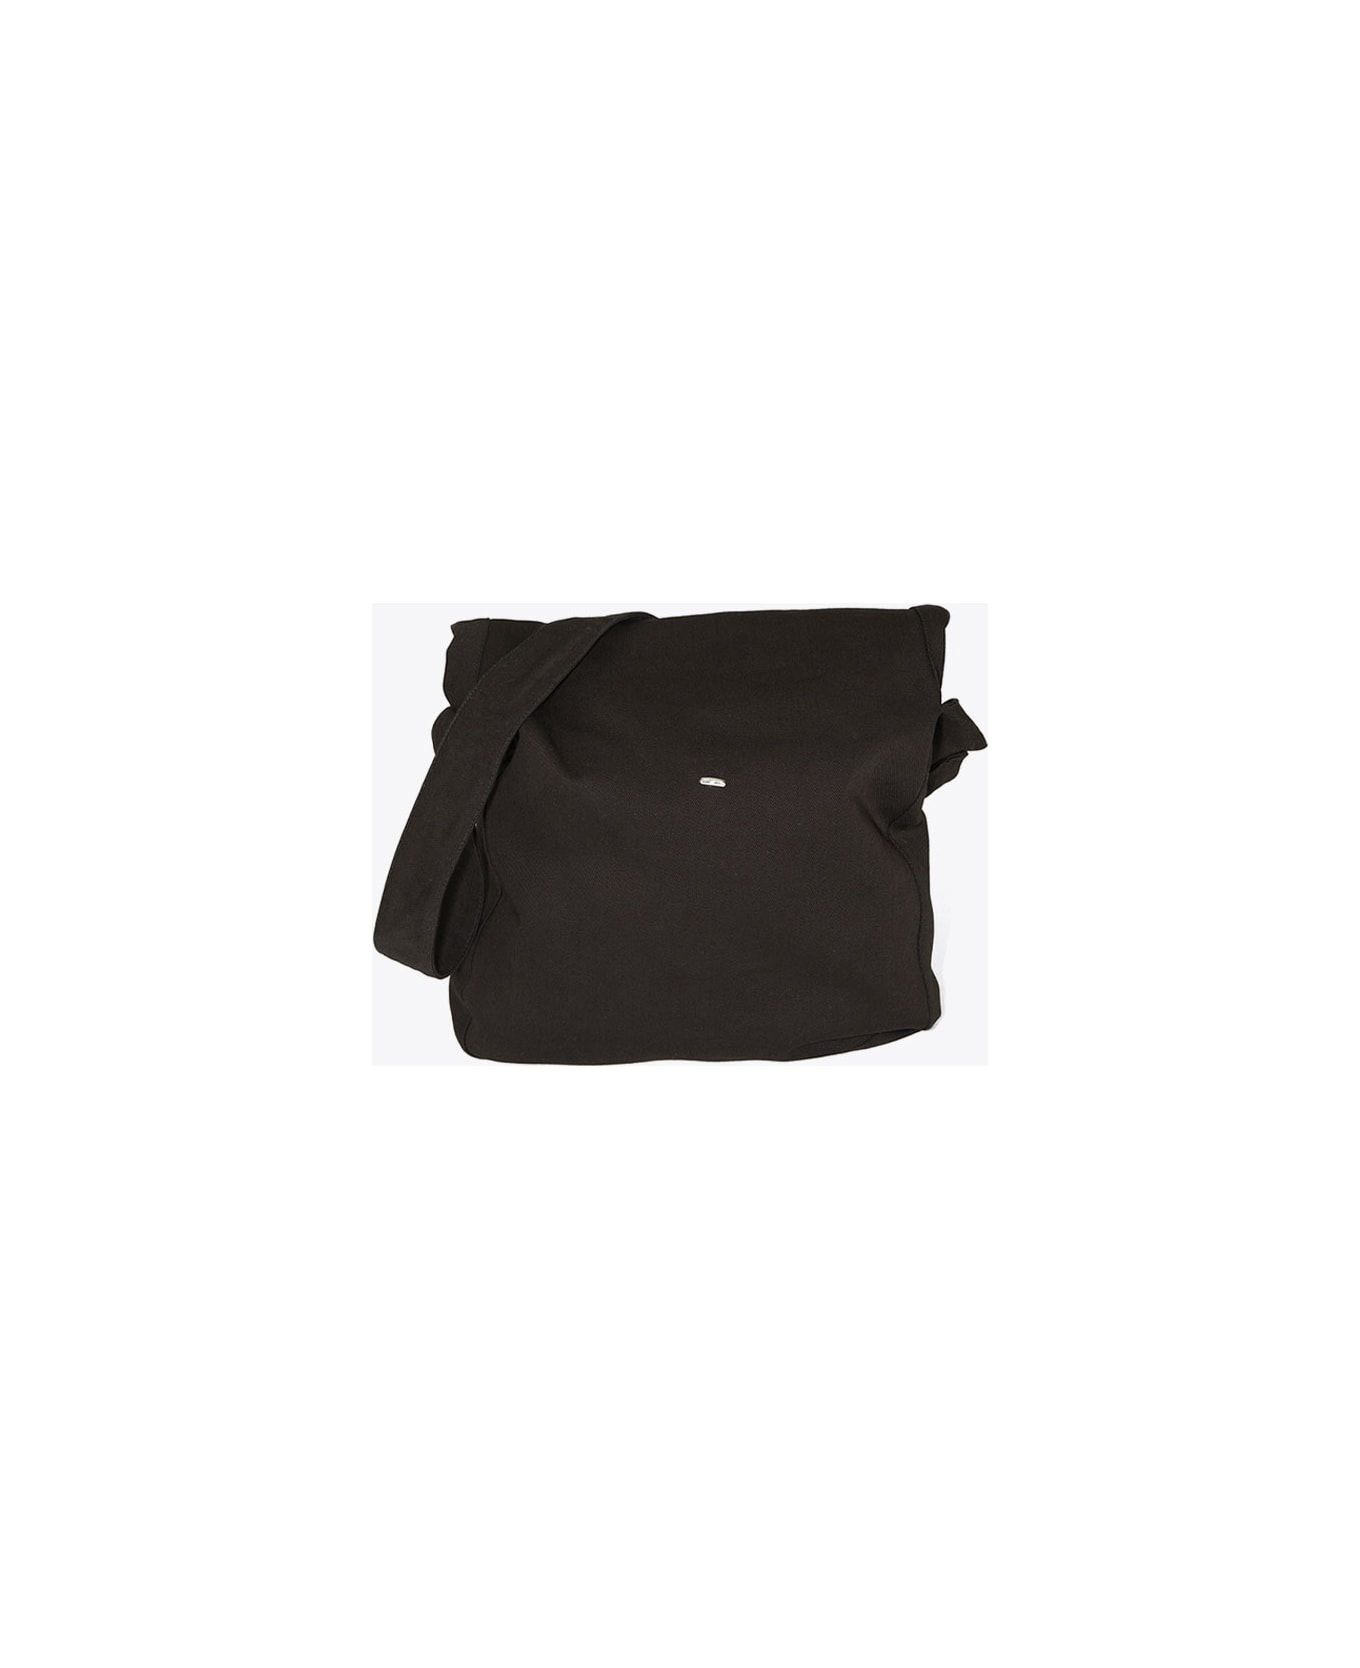 Our Legacy Sling Bag Black canvas bag with shoulder strap - Sling bag - Denim nero